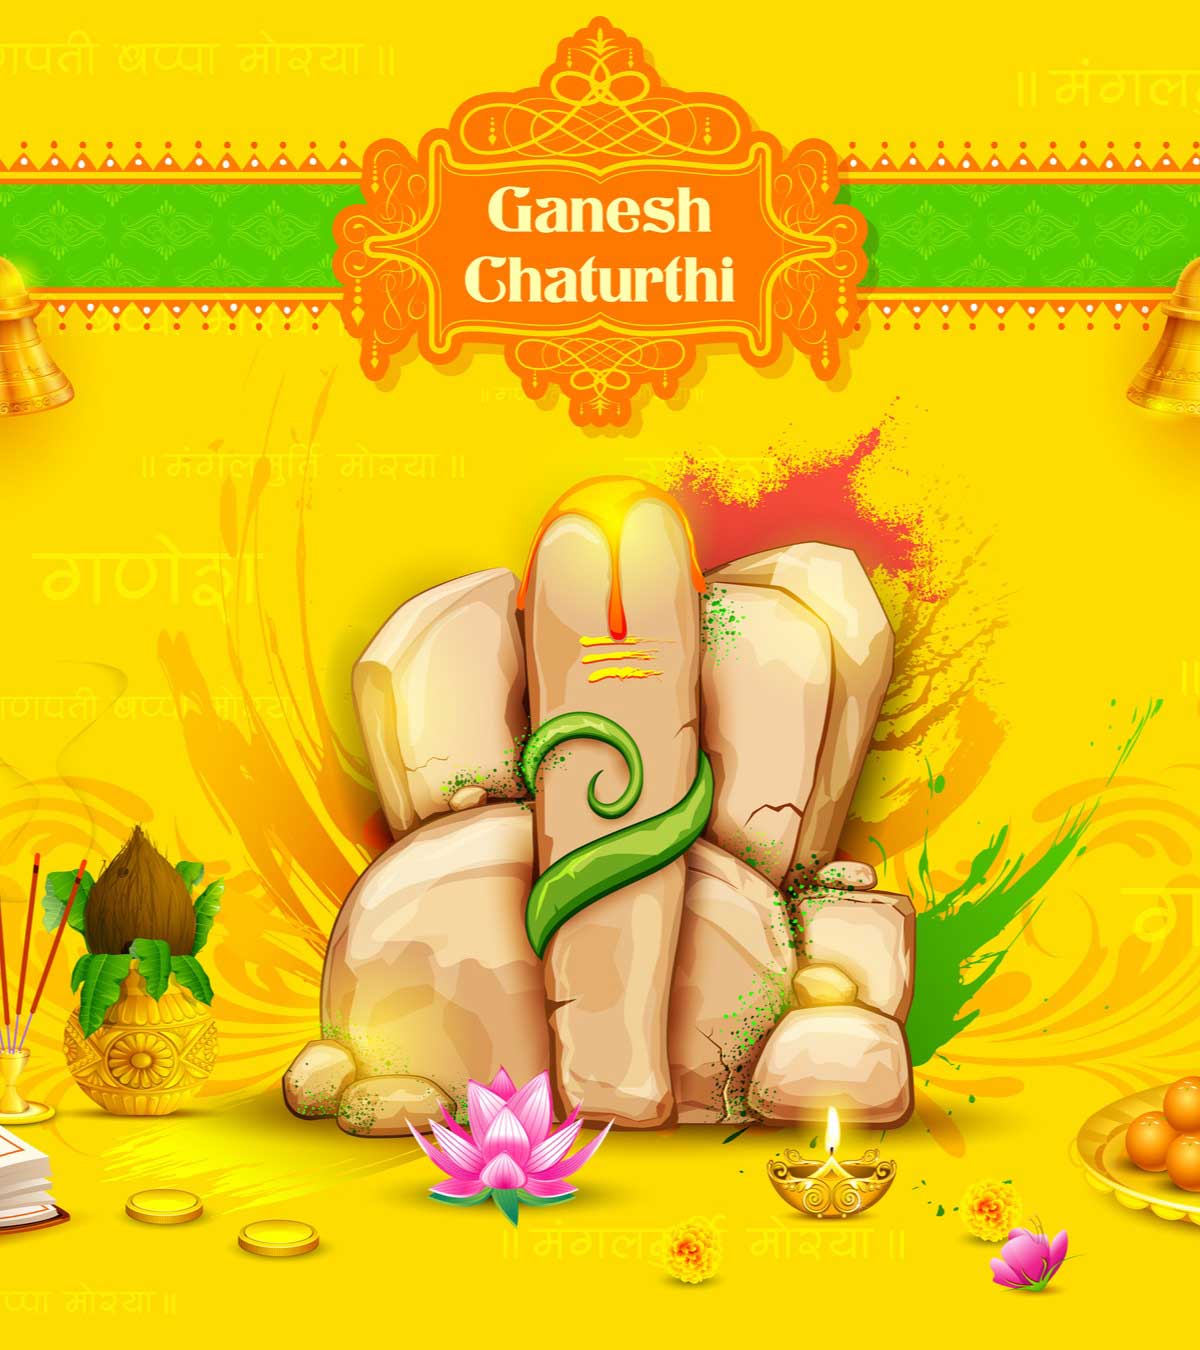 100+ गणेश चतुर्थी की हार्दिक शुभकामनाएं, कोट्स, शायरी व स्टेटस | Happy Ganesh Chaturthi Wishes In Hindi